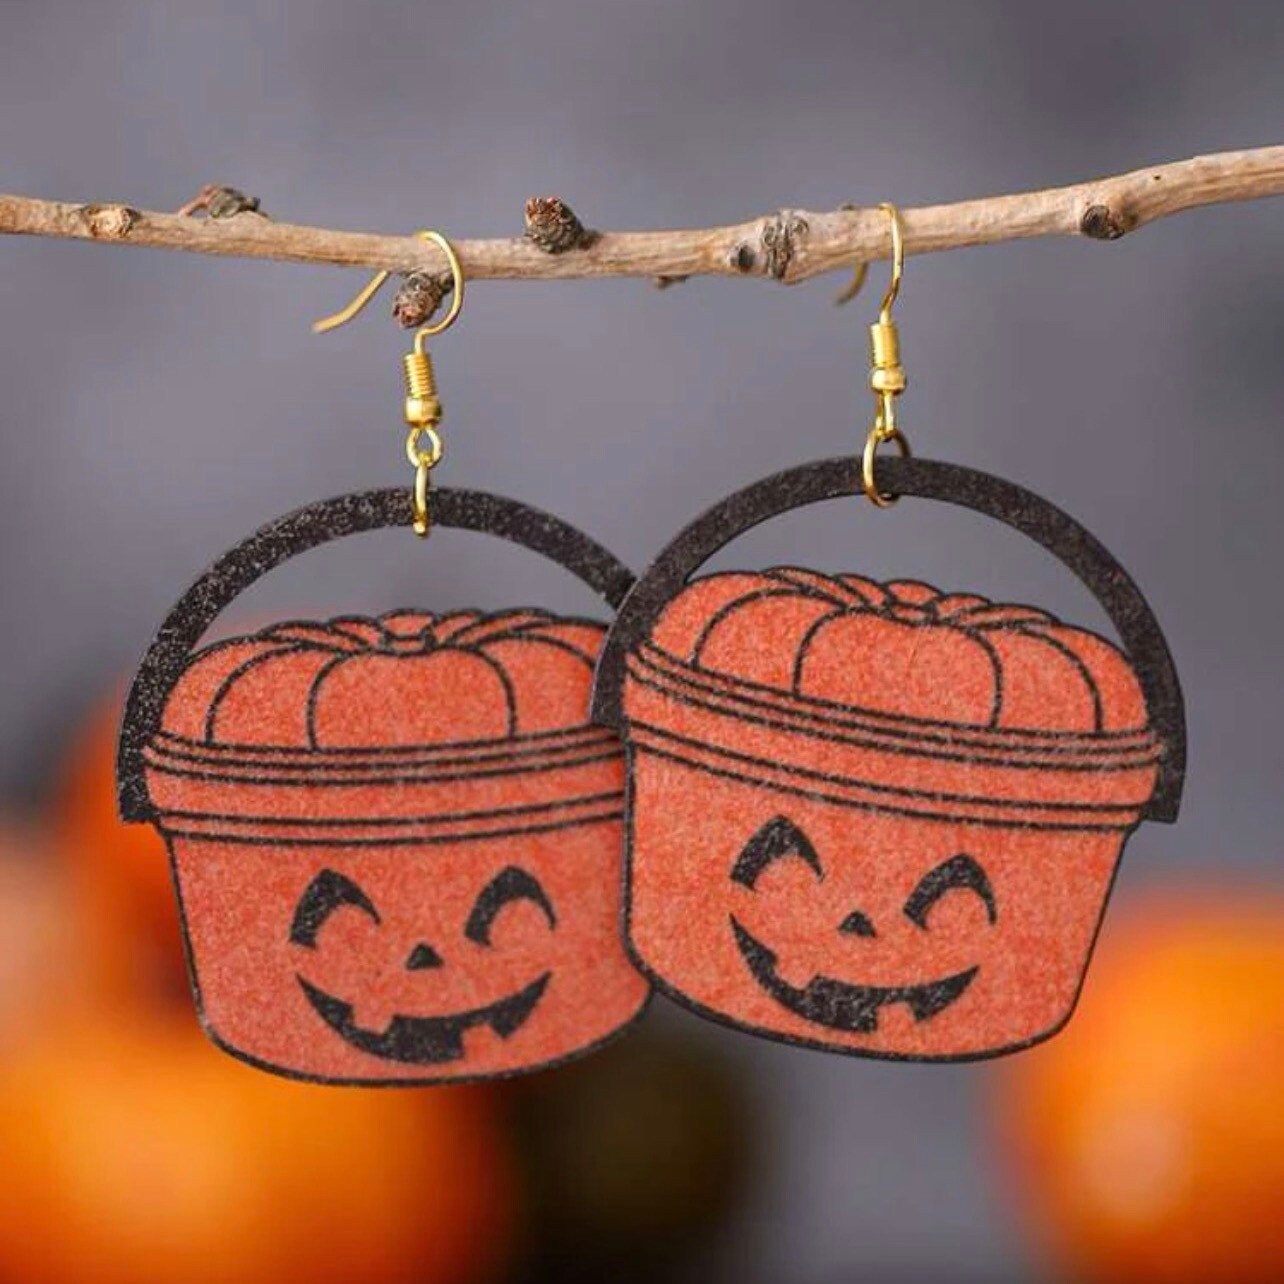 Old School Pumpkin Earrings - Halloween Earrings, Pumpkin Jewelry, Halloween Jewelry, Happy Meal, Old Skool Halloween, Pumpkin Buckets